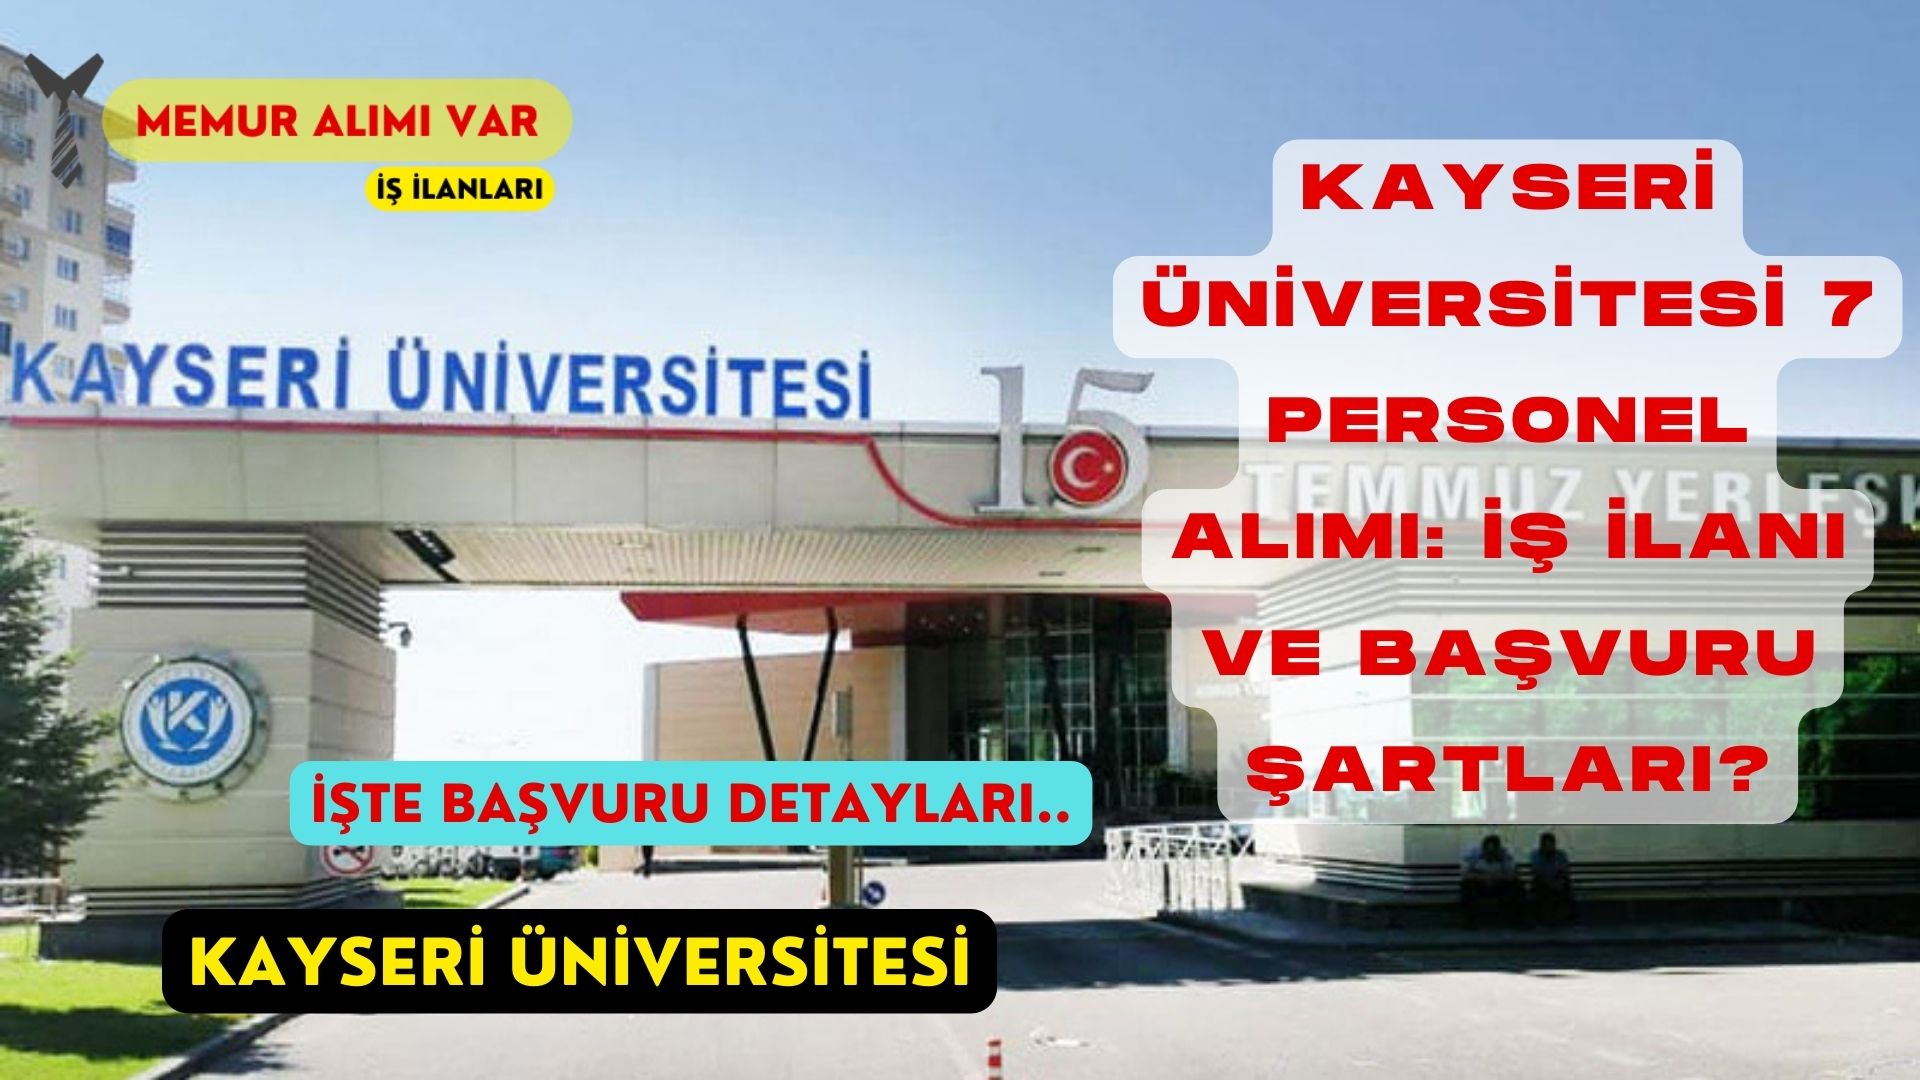 Kayseri Üniversitesi 7 Personel Alımı: İş İlanı ve Başvuru Şartları?